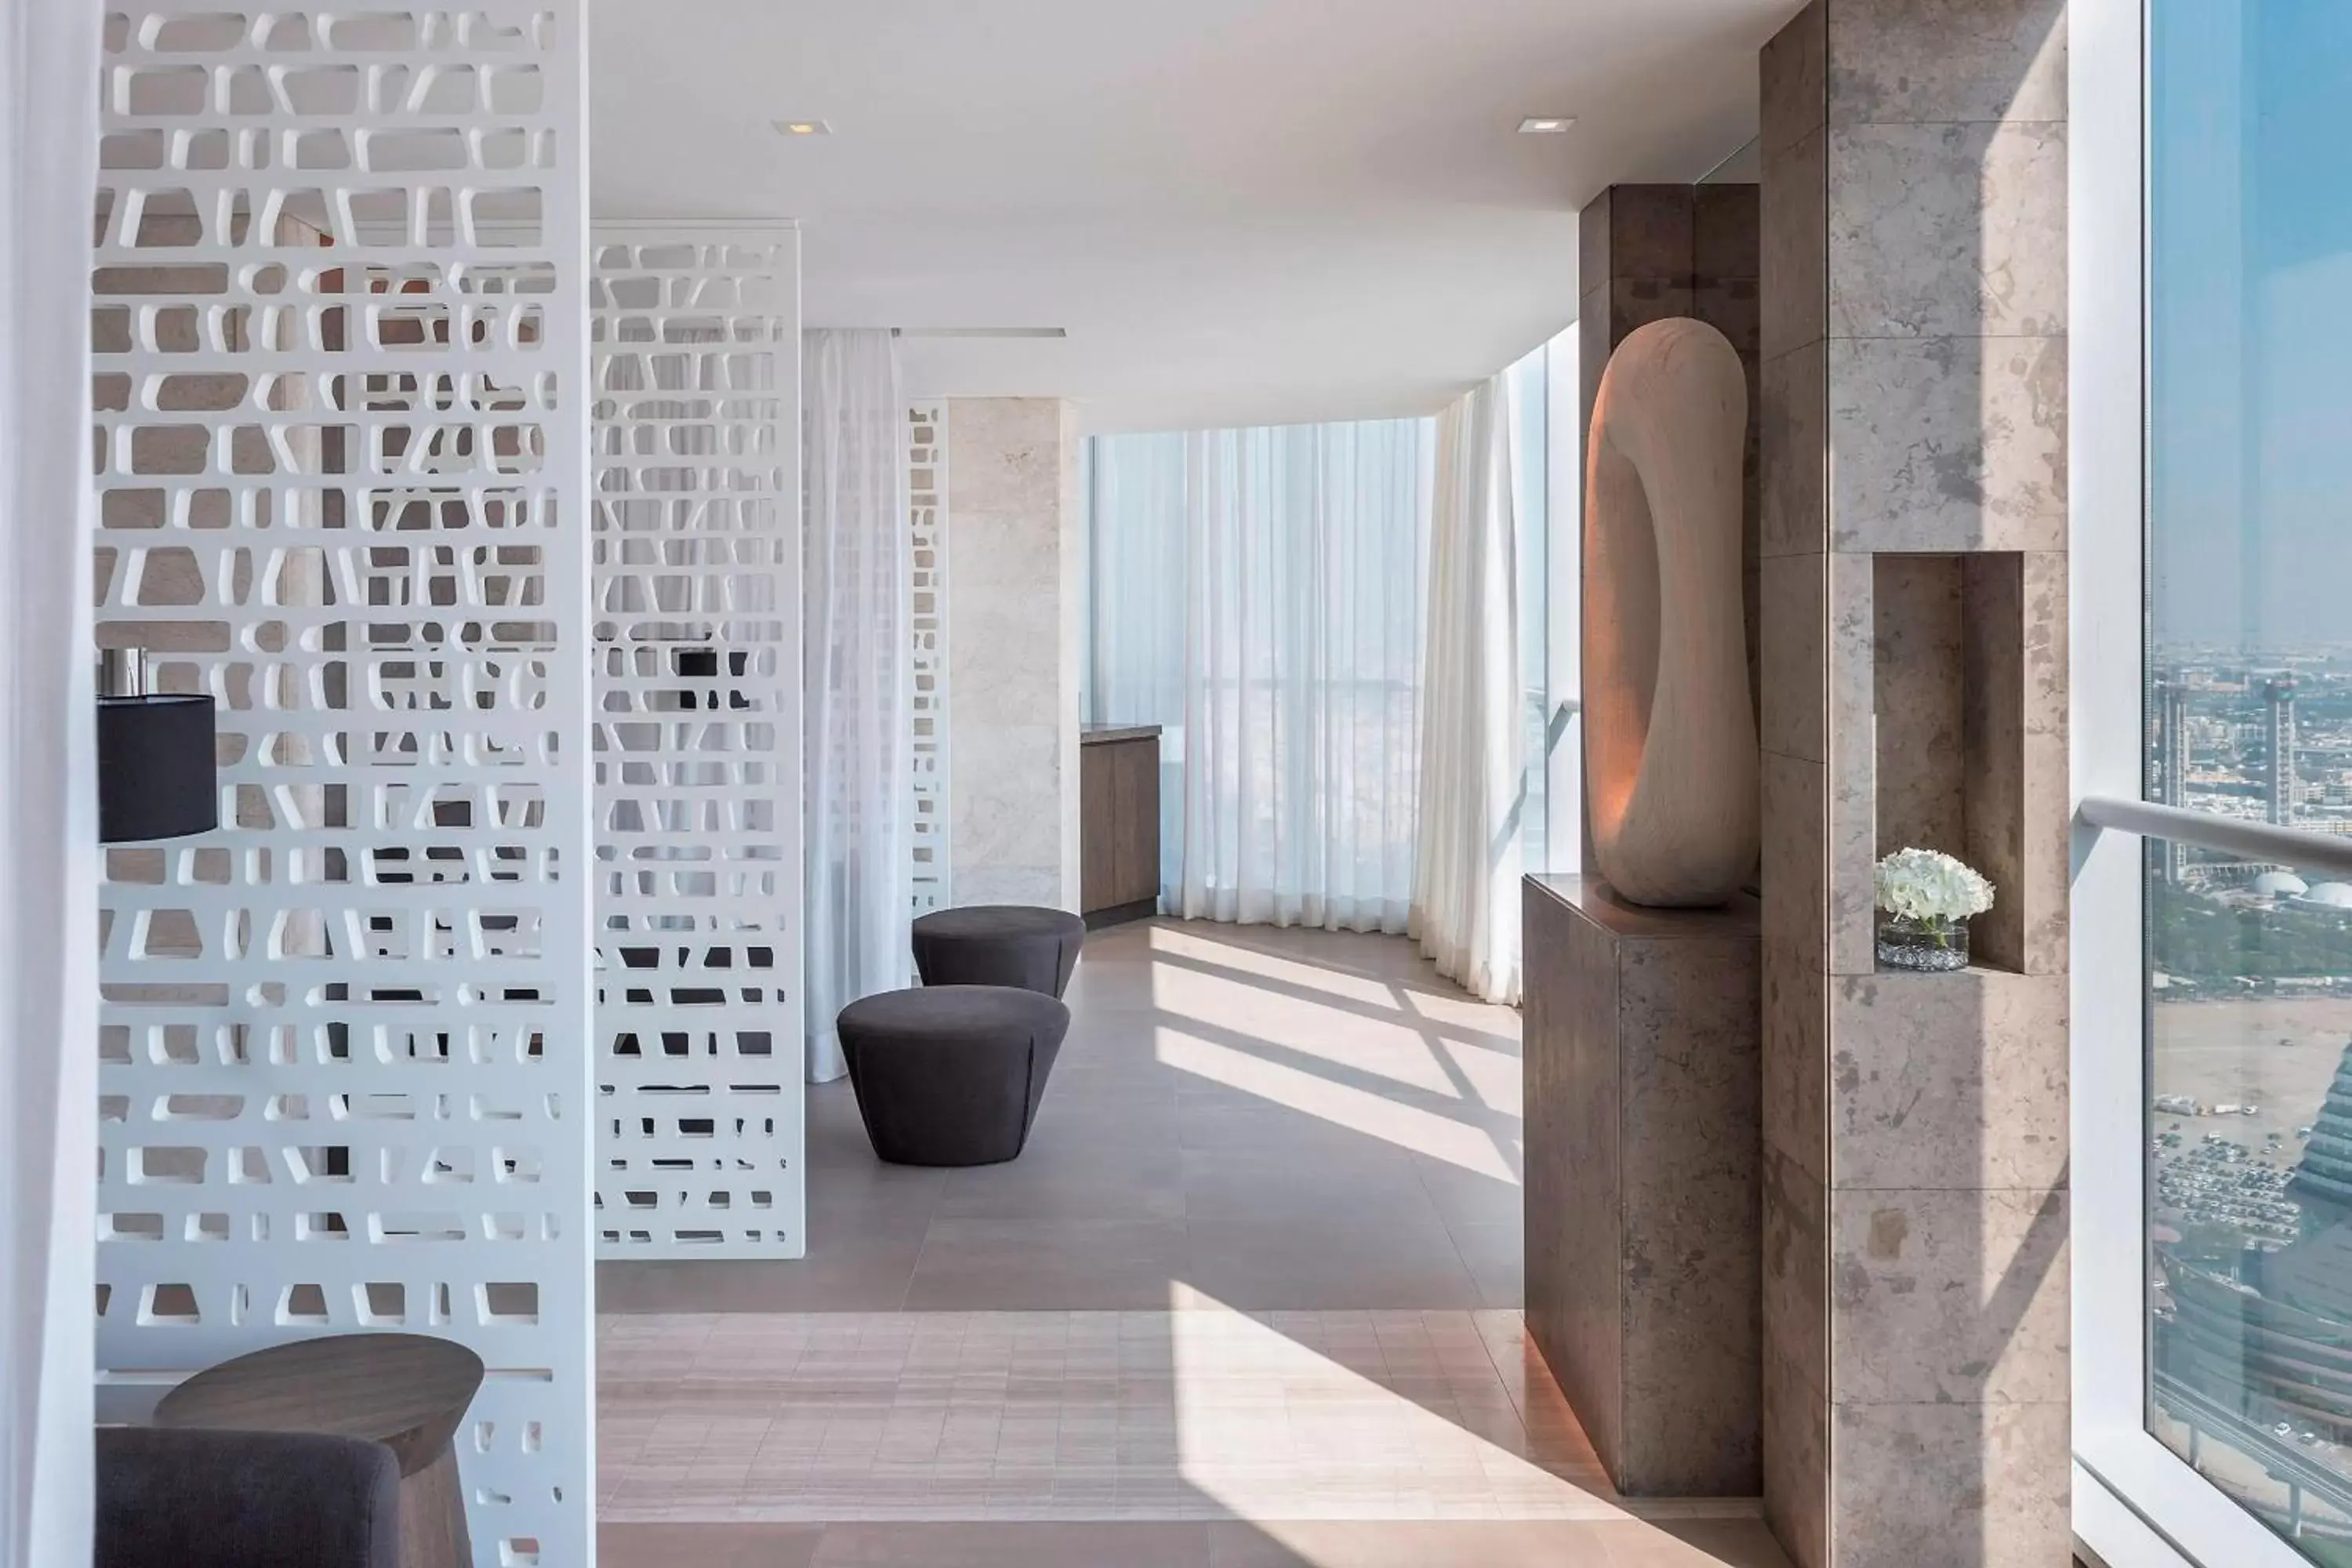 Spa and wellness centre/facilities, Bathroom in Sheraton Grand Hotel, Dubai